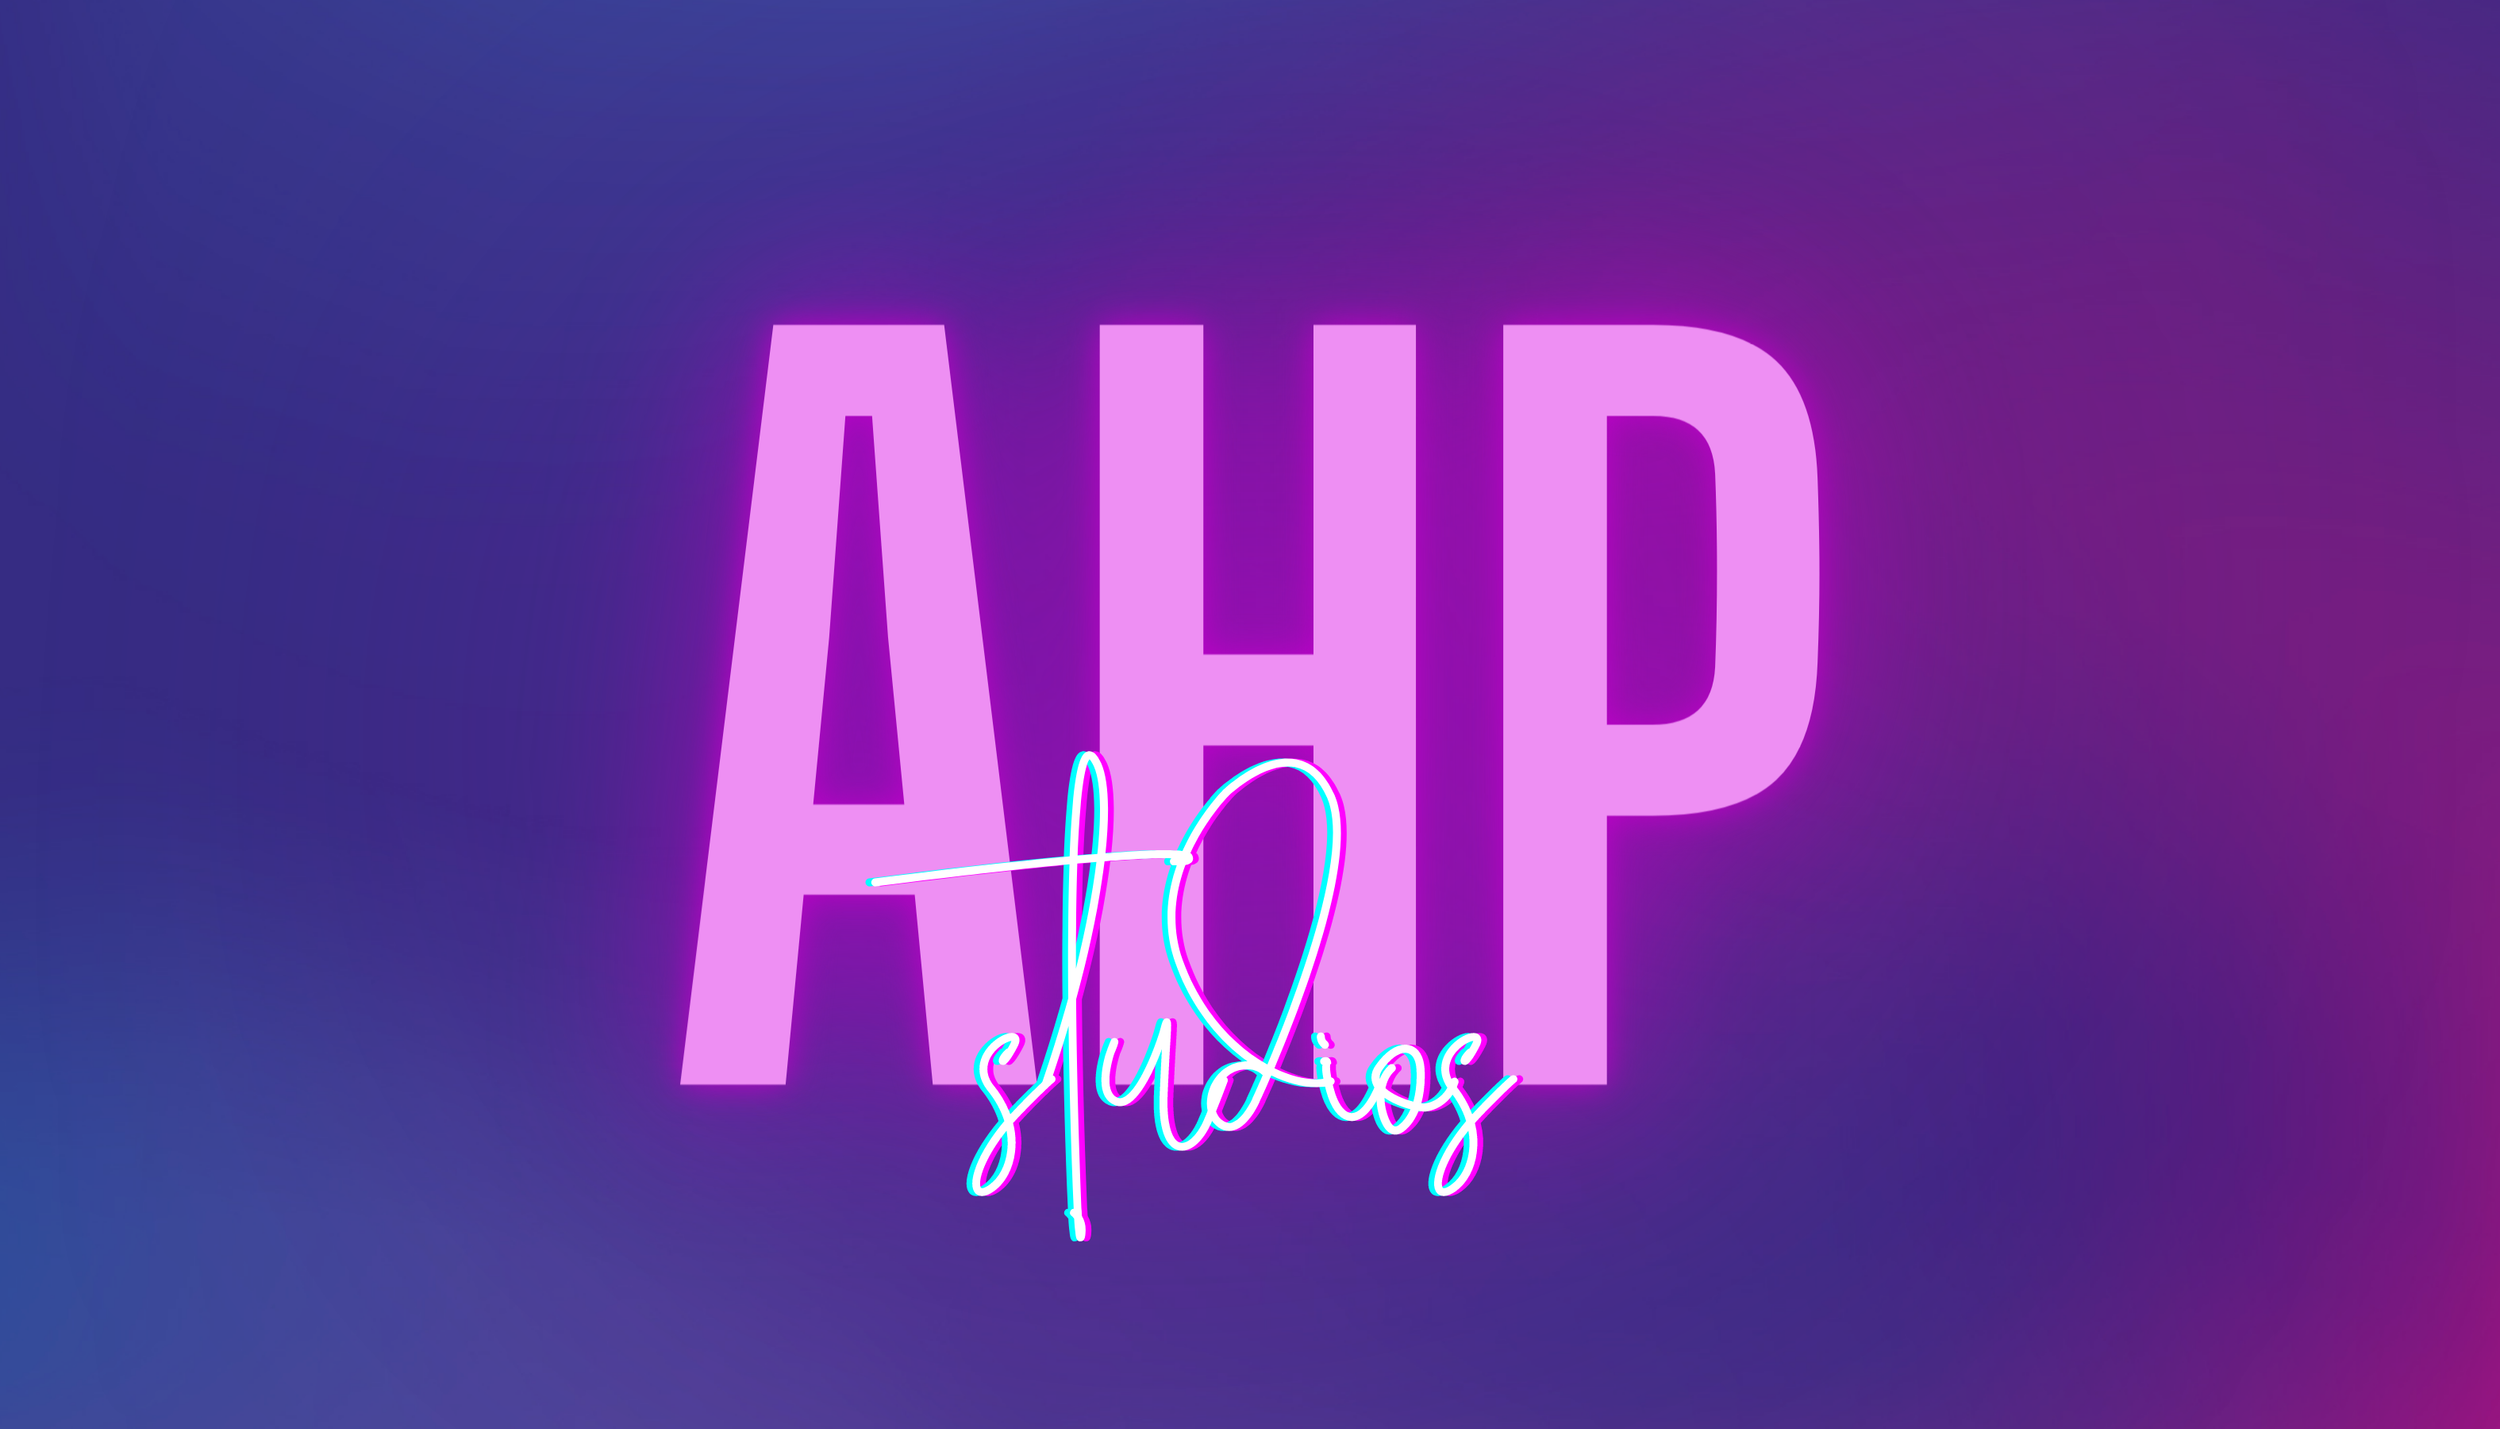 ahp studios logo purple.png